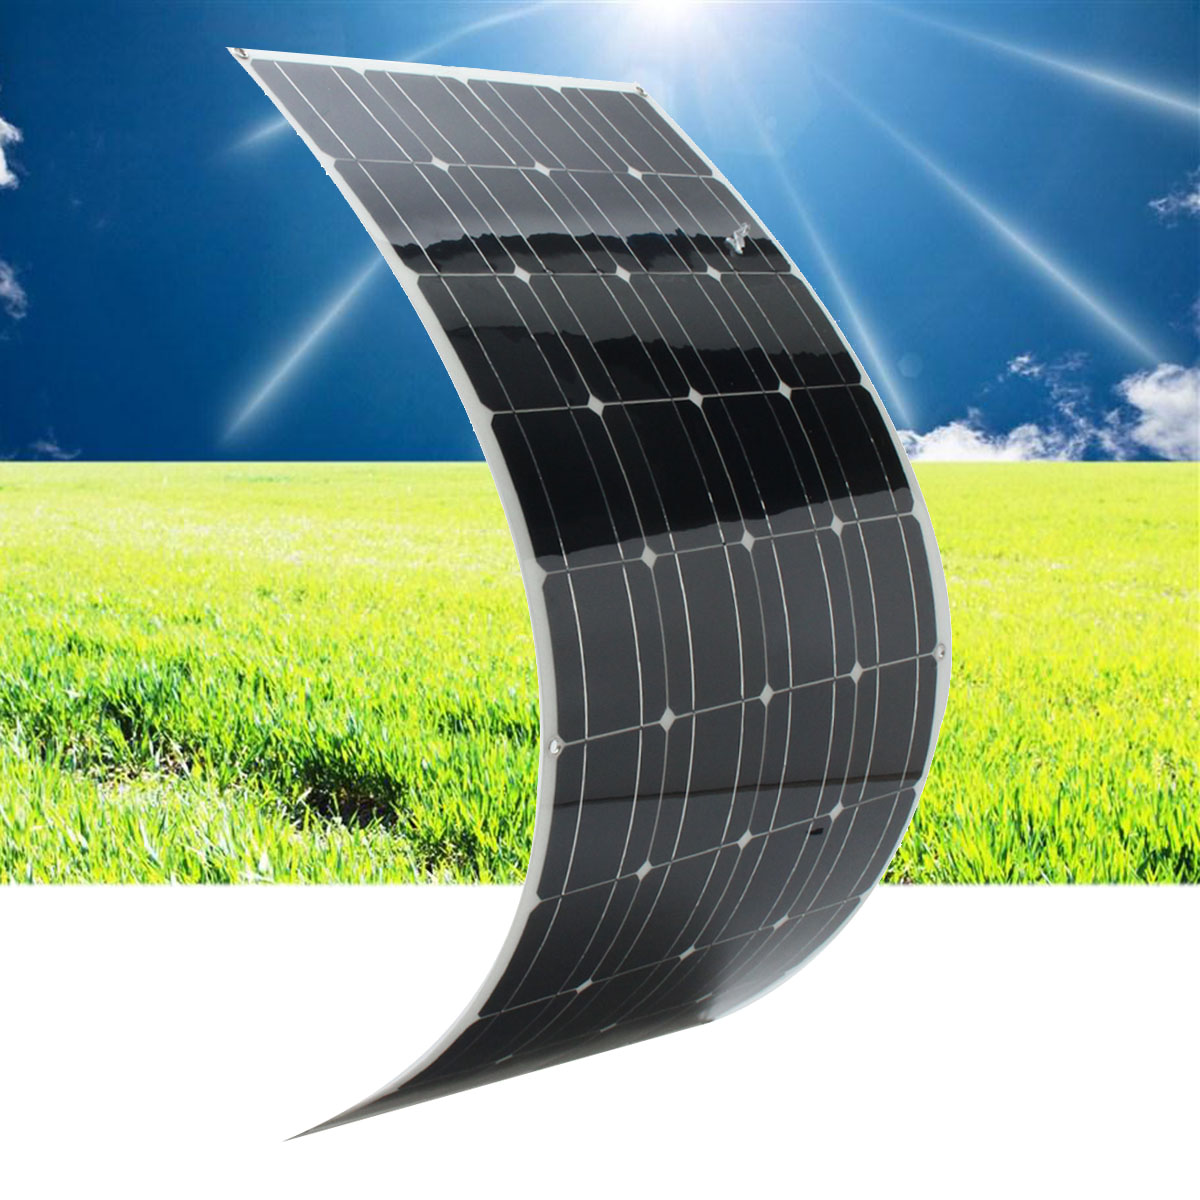 Flexible Solarmodule: Eine innovative Lösung für Solaranwendungen